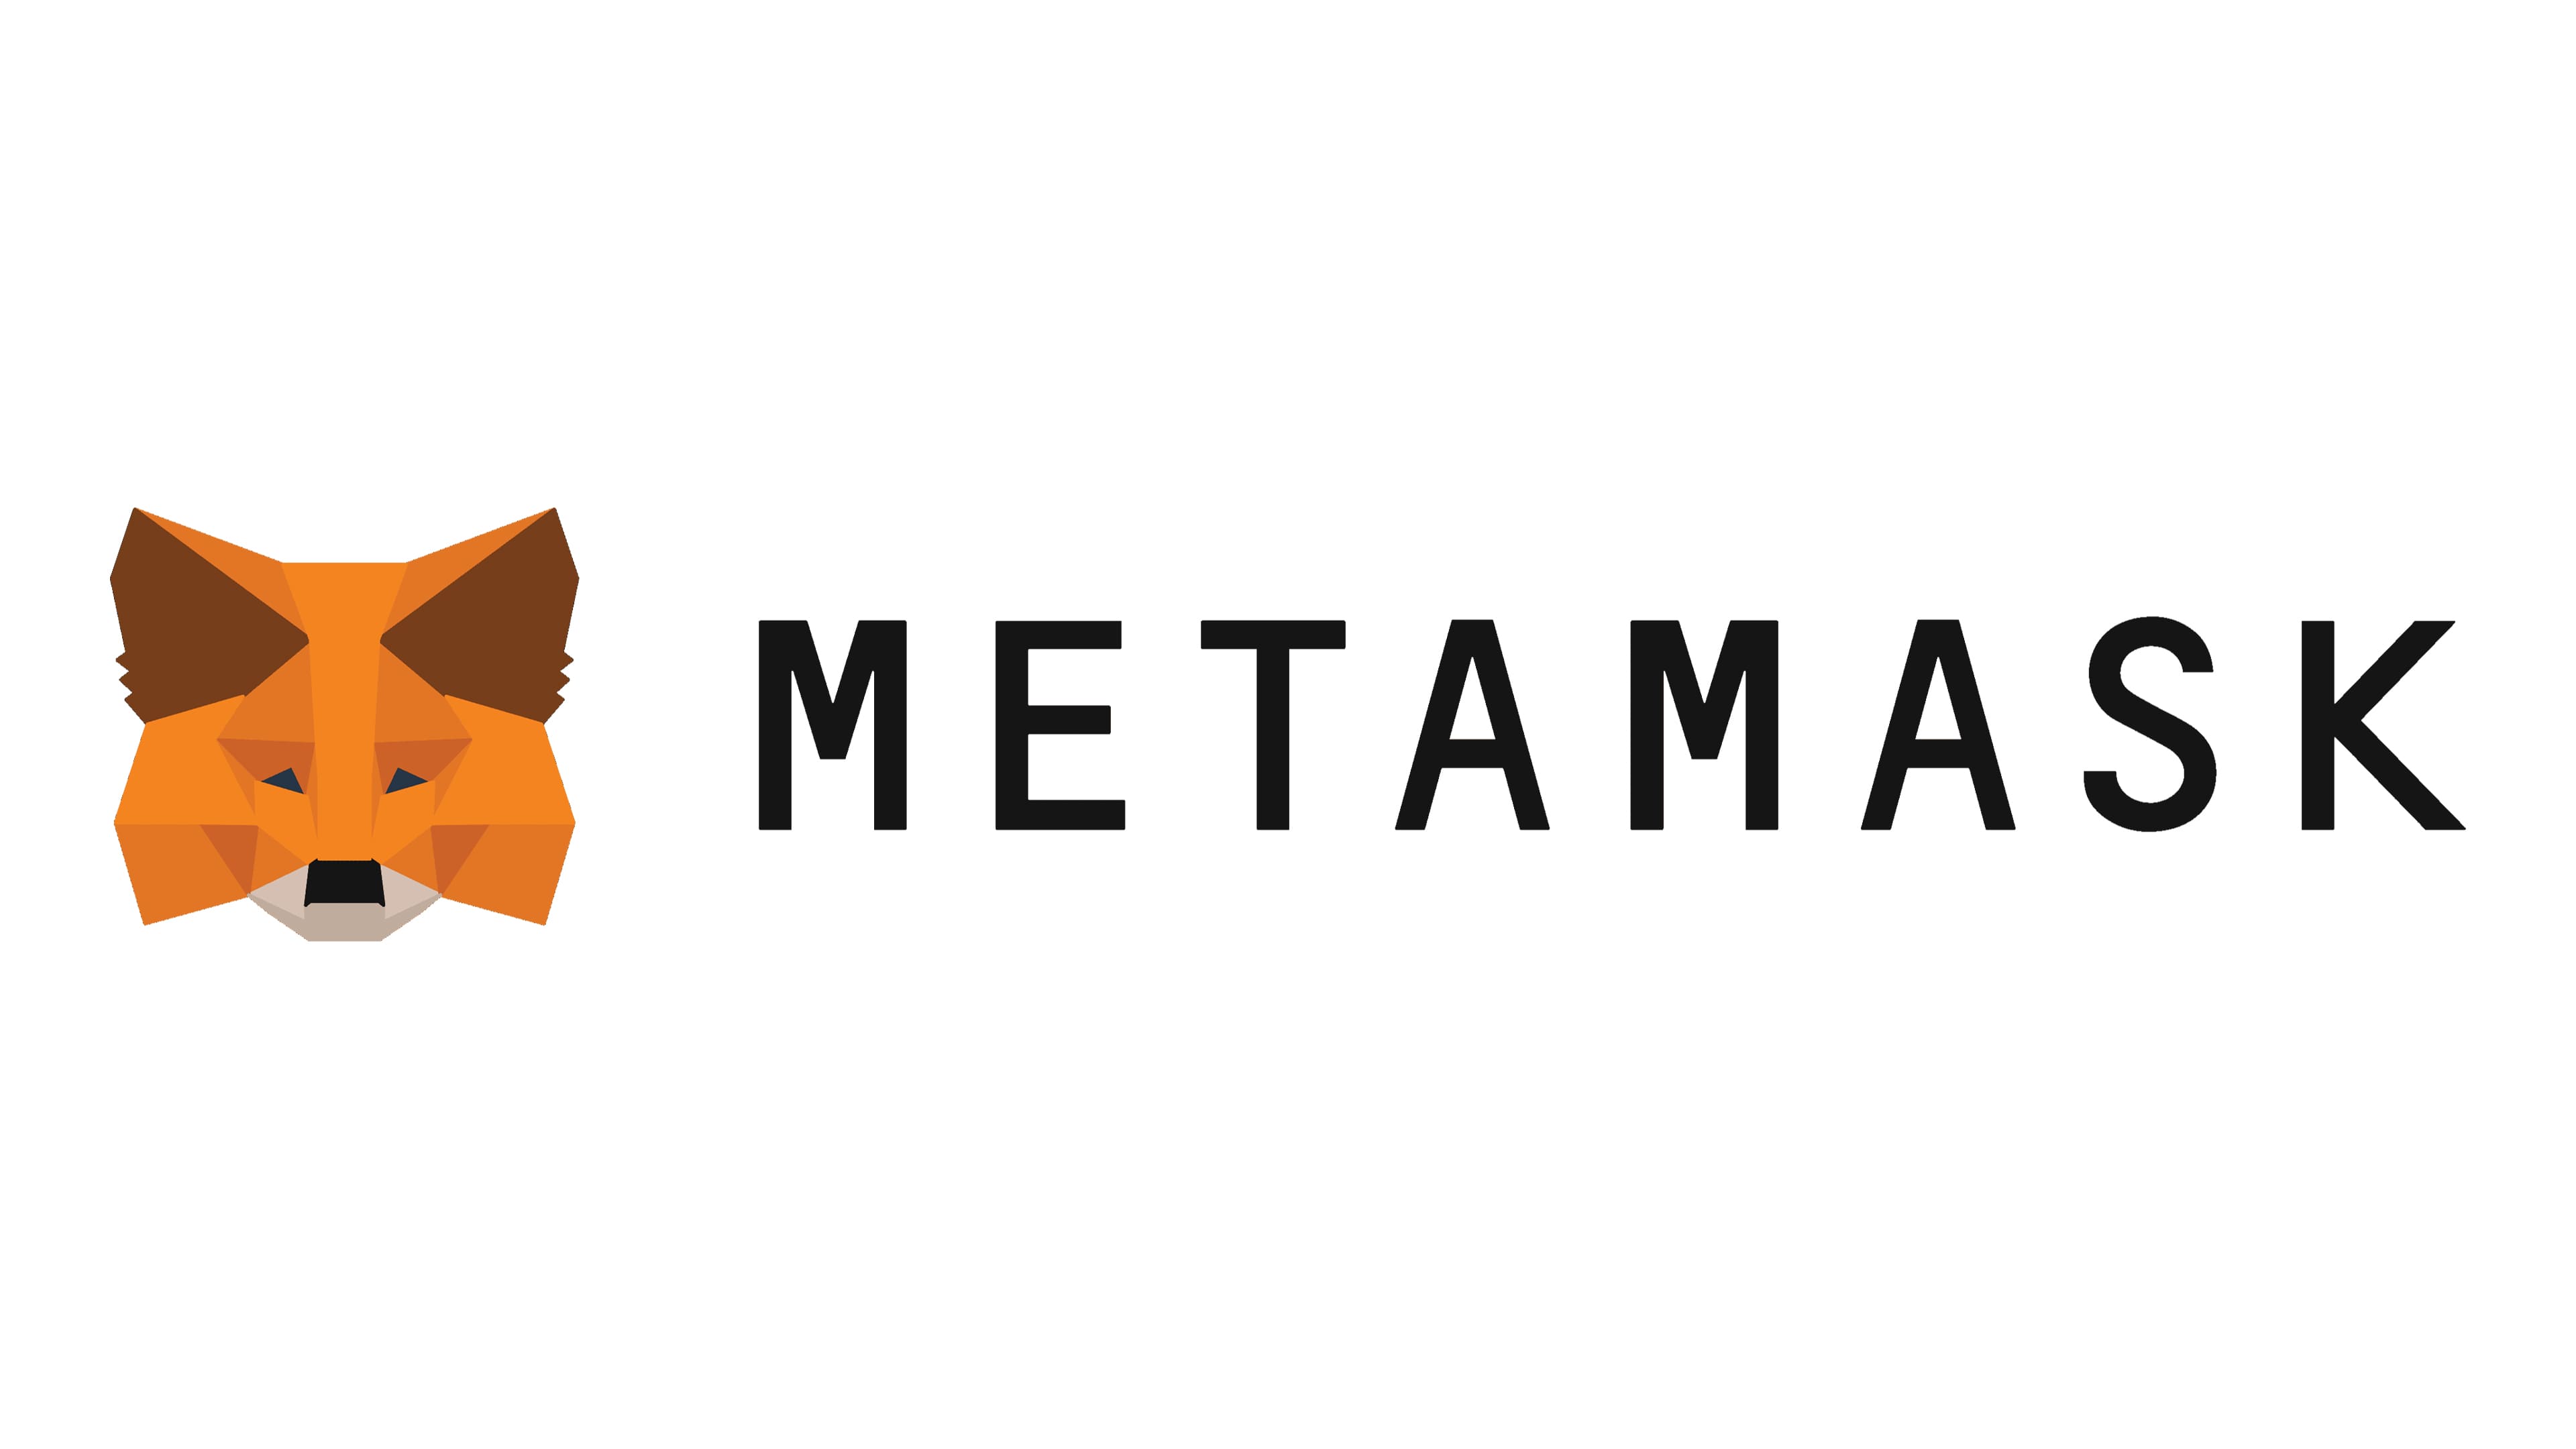 metamask meaning